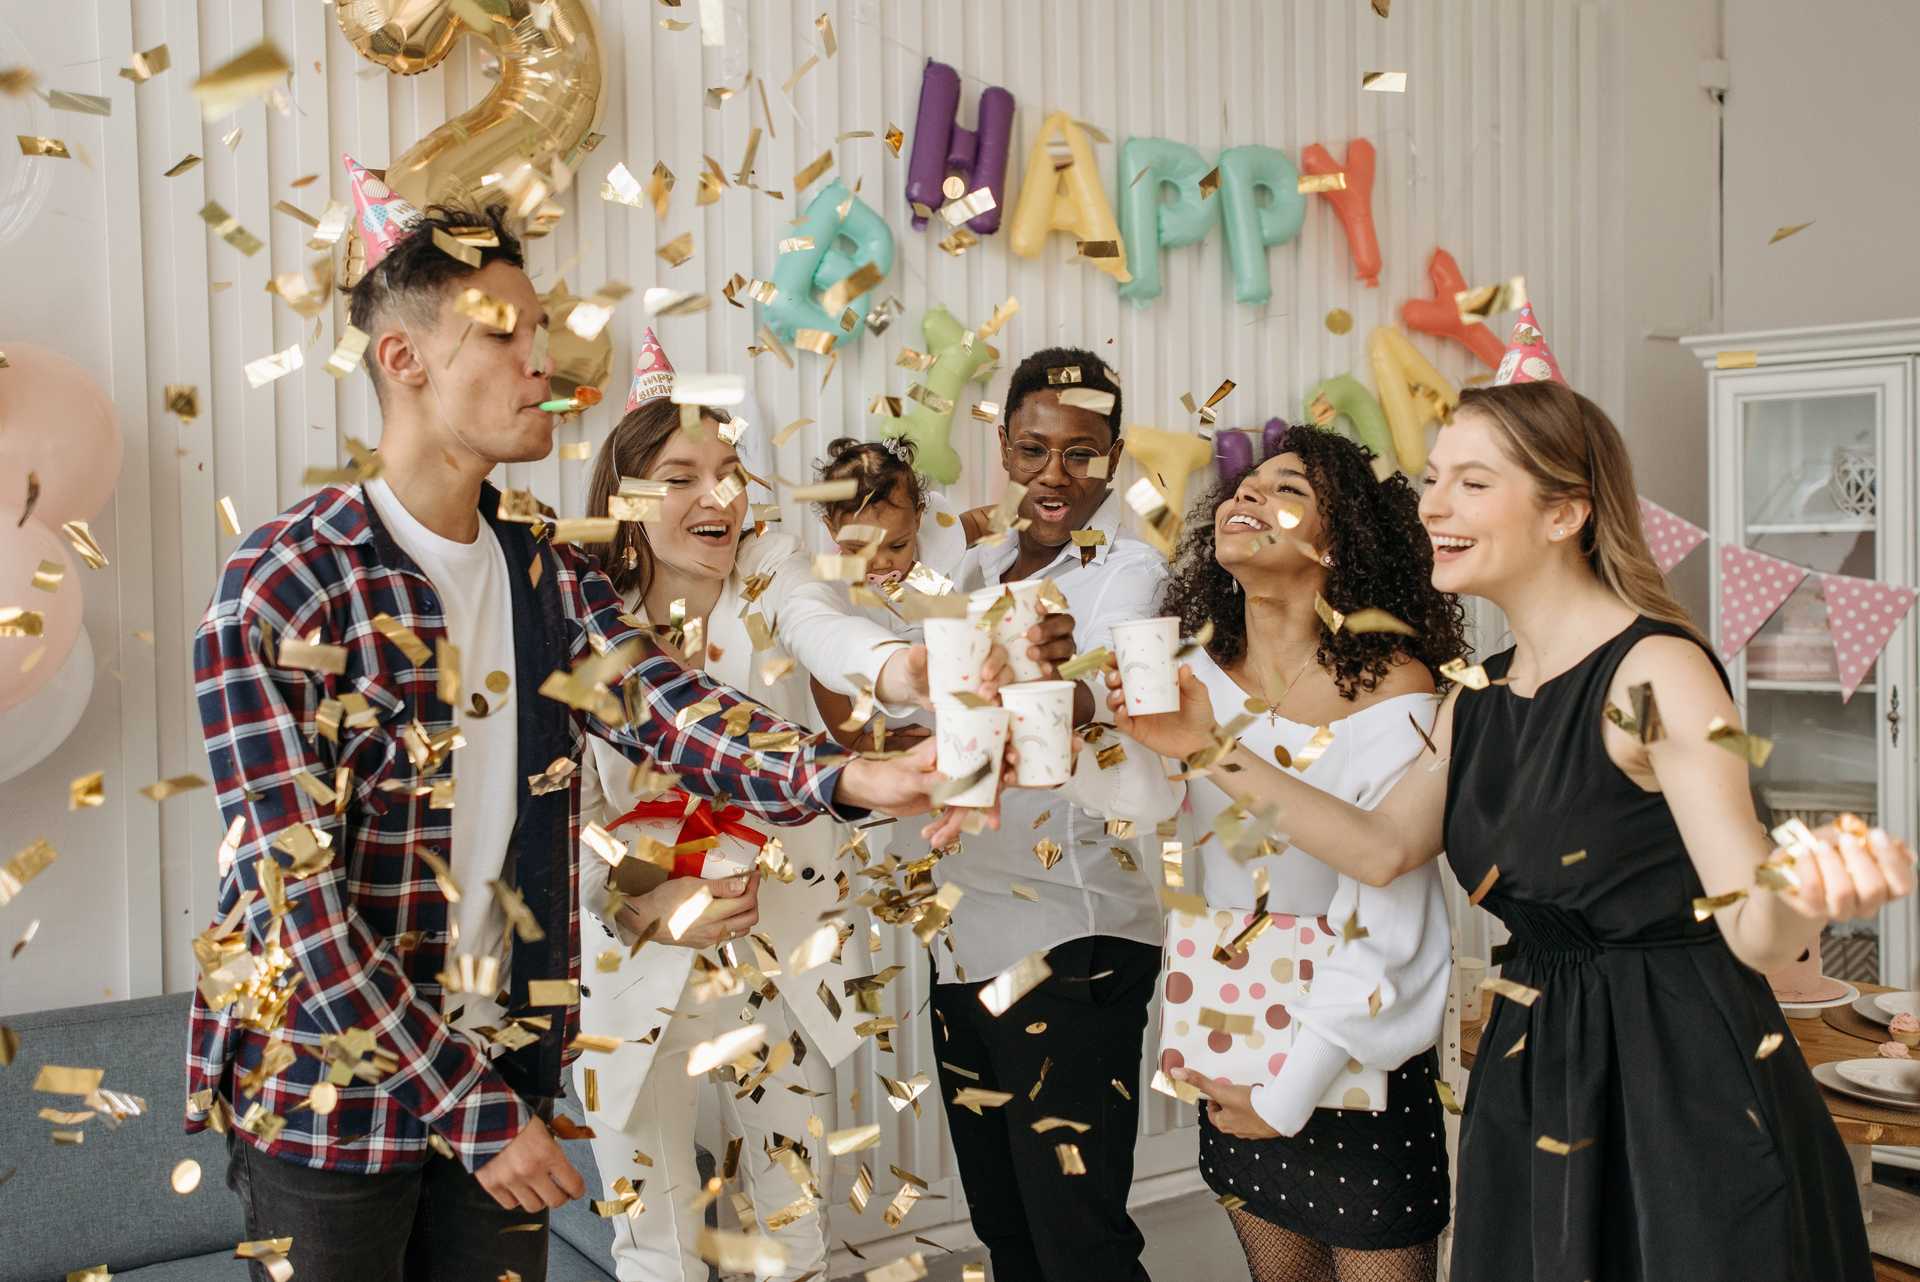 Eine Gruppe von Menschen feiert ihren Geburtstag mit Kuchen und Konfetti.